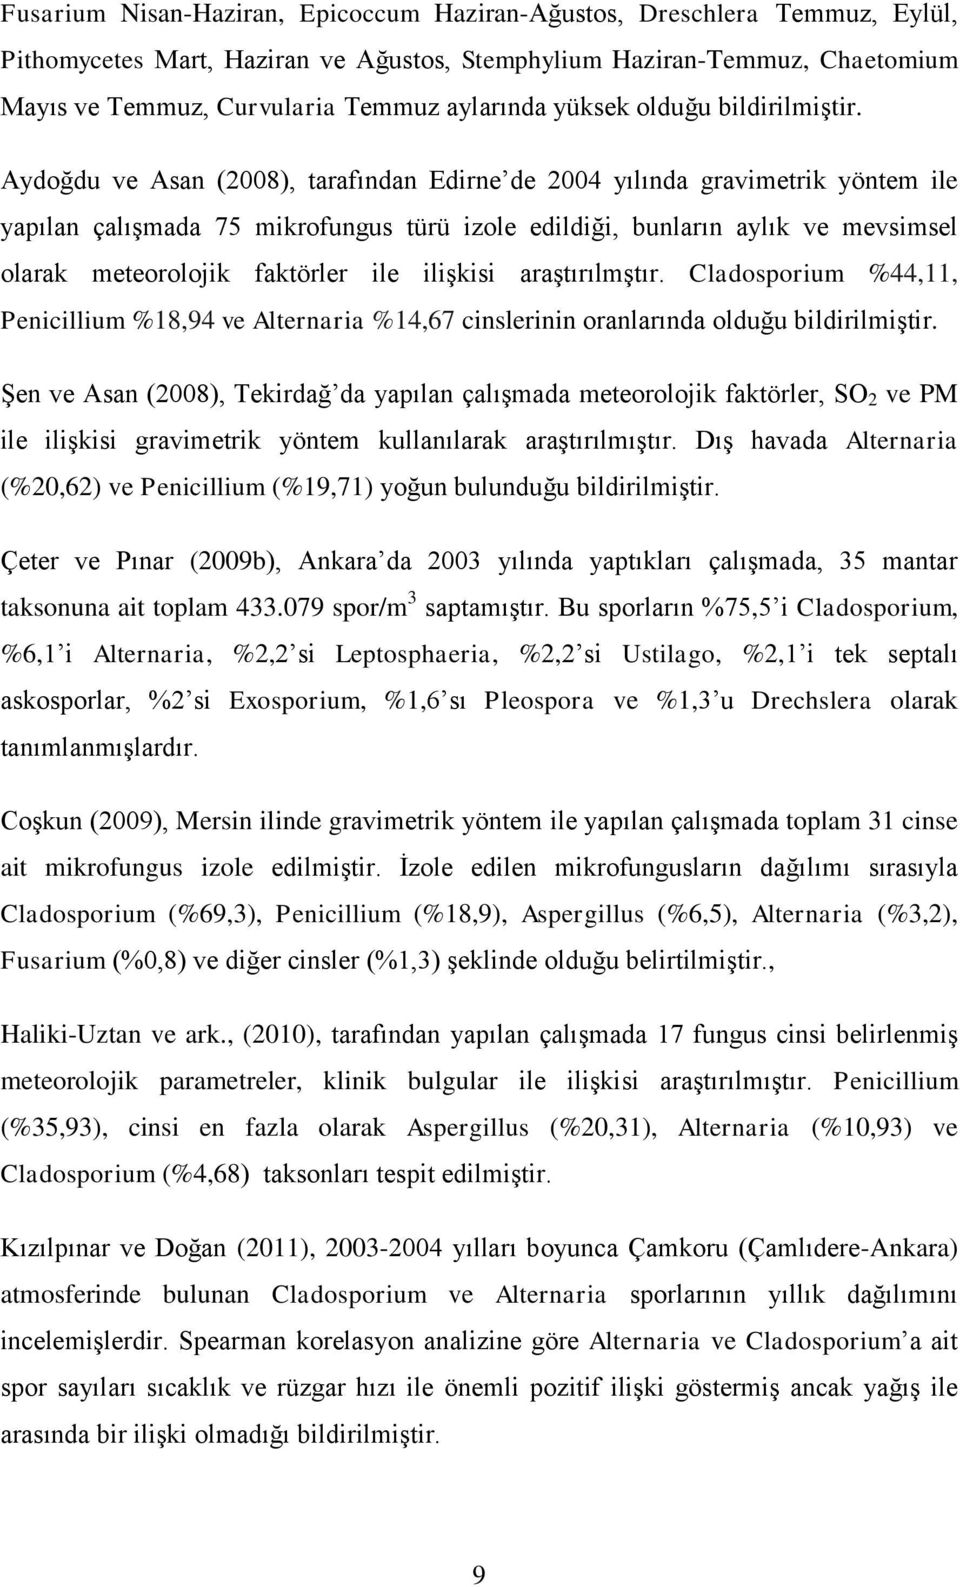 Aydoğdu ve Asan (2008), tarafından Edirne de 2004 yılında gravimetrik yöntem ile yapılan çalışmada 75 mikrofungus türü izole edildiği, bunların aylık ve mevsimsel olarak meteorolojik faktörler ile